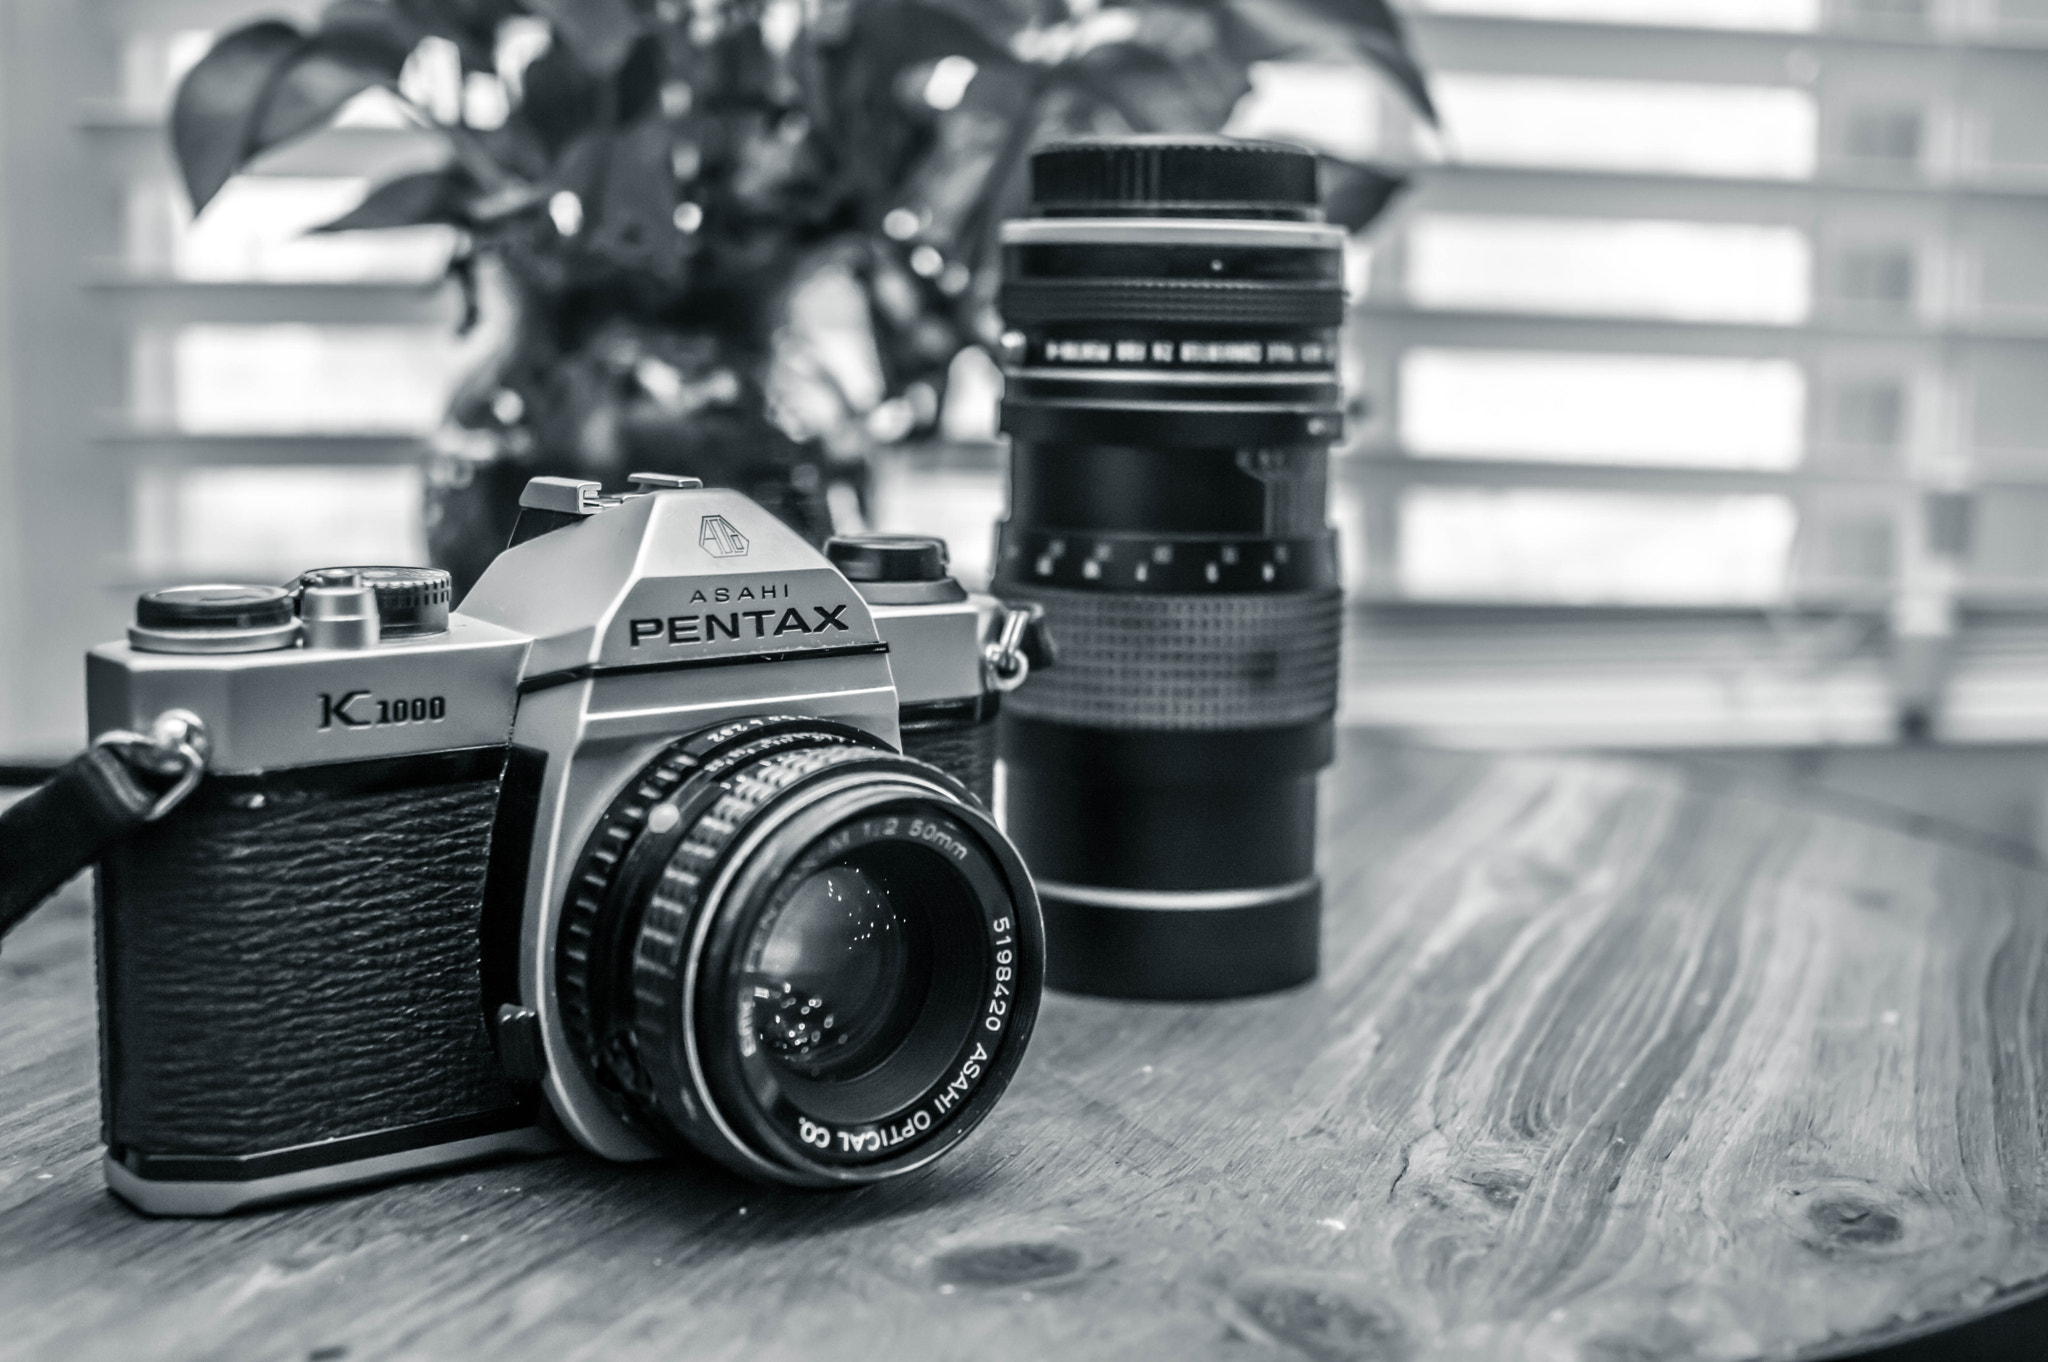 Nikon D3200 + Nikon AF Nikkor 28mm F2.8D sample photo. Vintage pentax k1000 photography